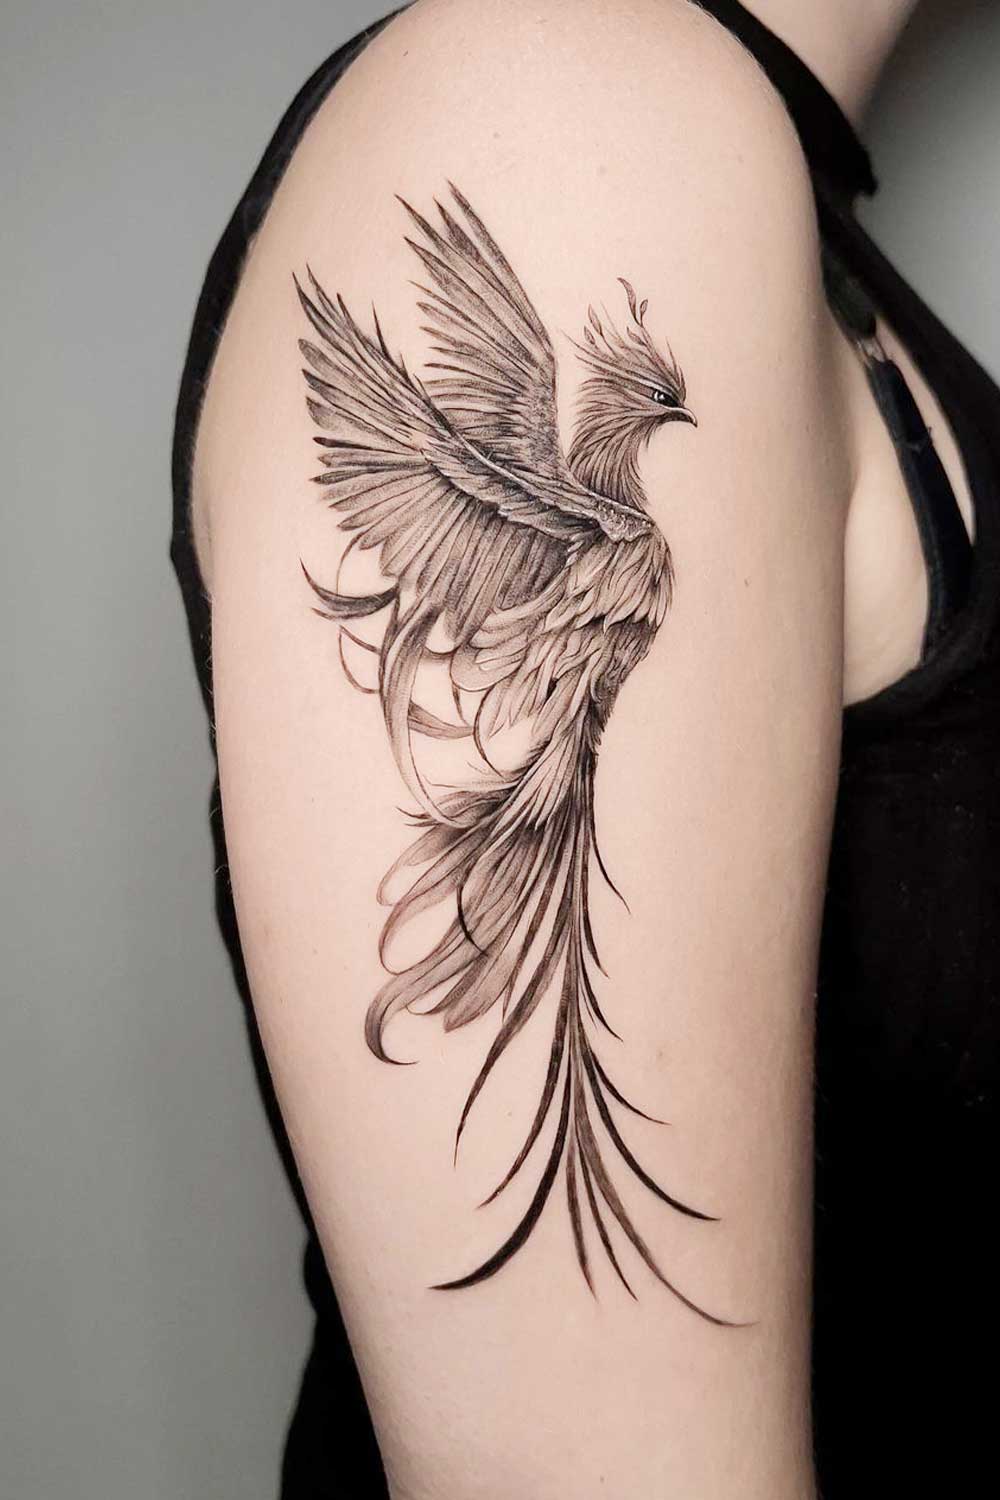 Angel Tattoo Design Studio - Small phoenix tattoo : Angel Tattoo Design  Studio . Location: Gurgaon . Contact: 8826602967 . #gurgaon #tattoo  #tattoodesigns #tattoostudio #tattooartist #tattooservices #tattoodesigns  #trending #tattooideas ...